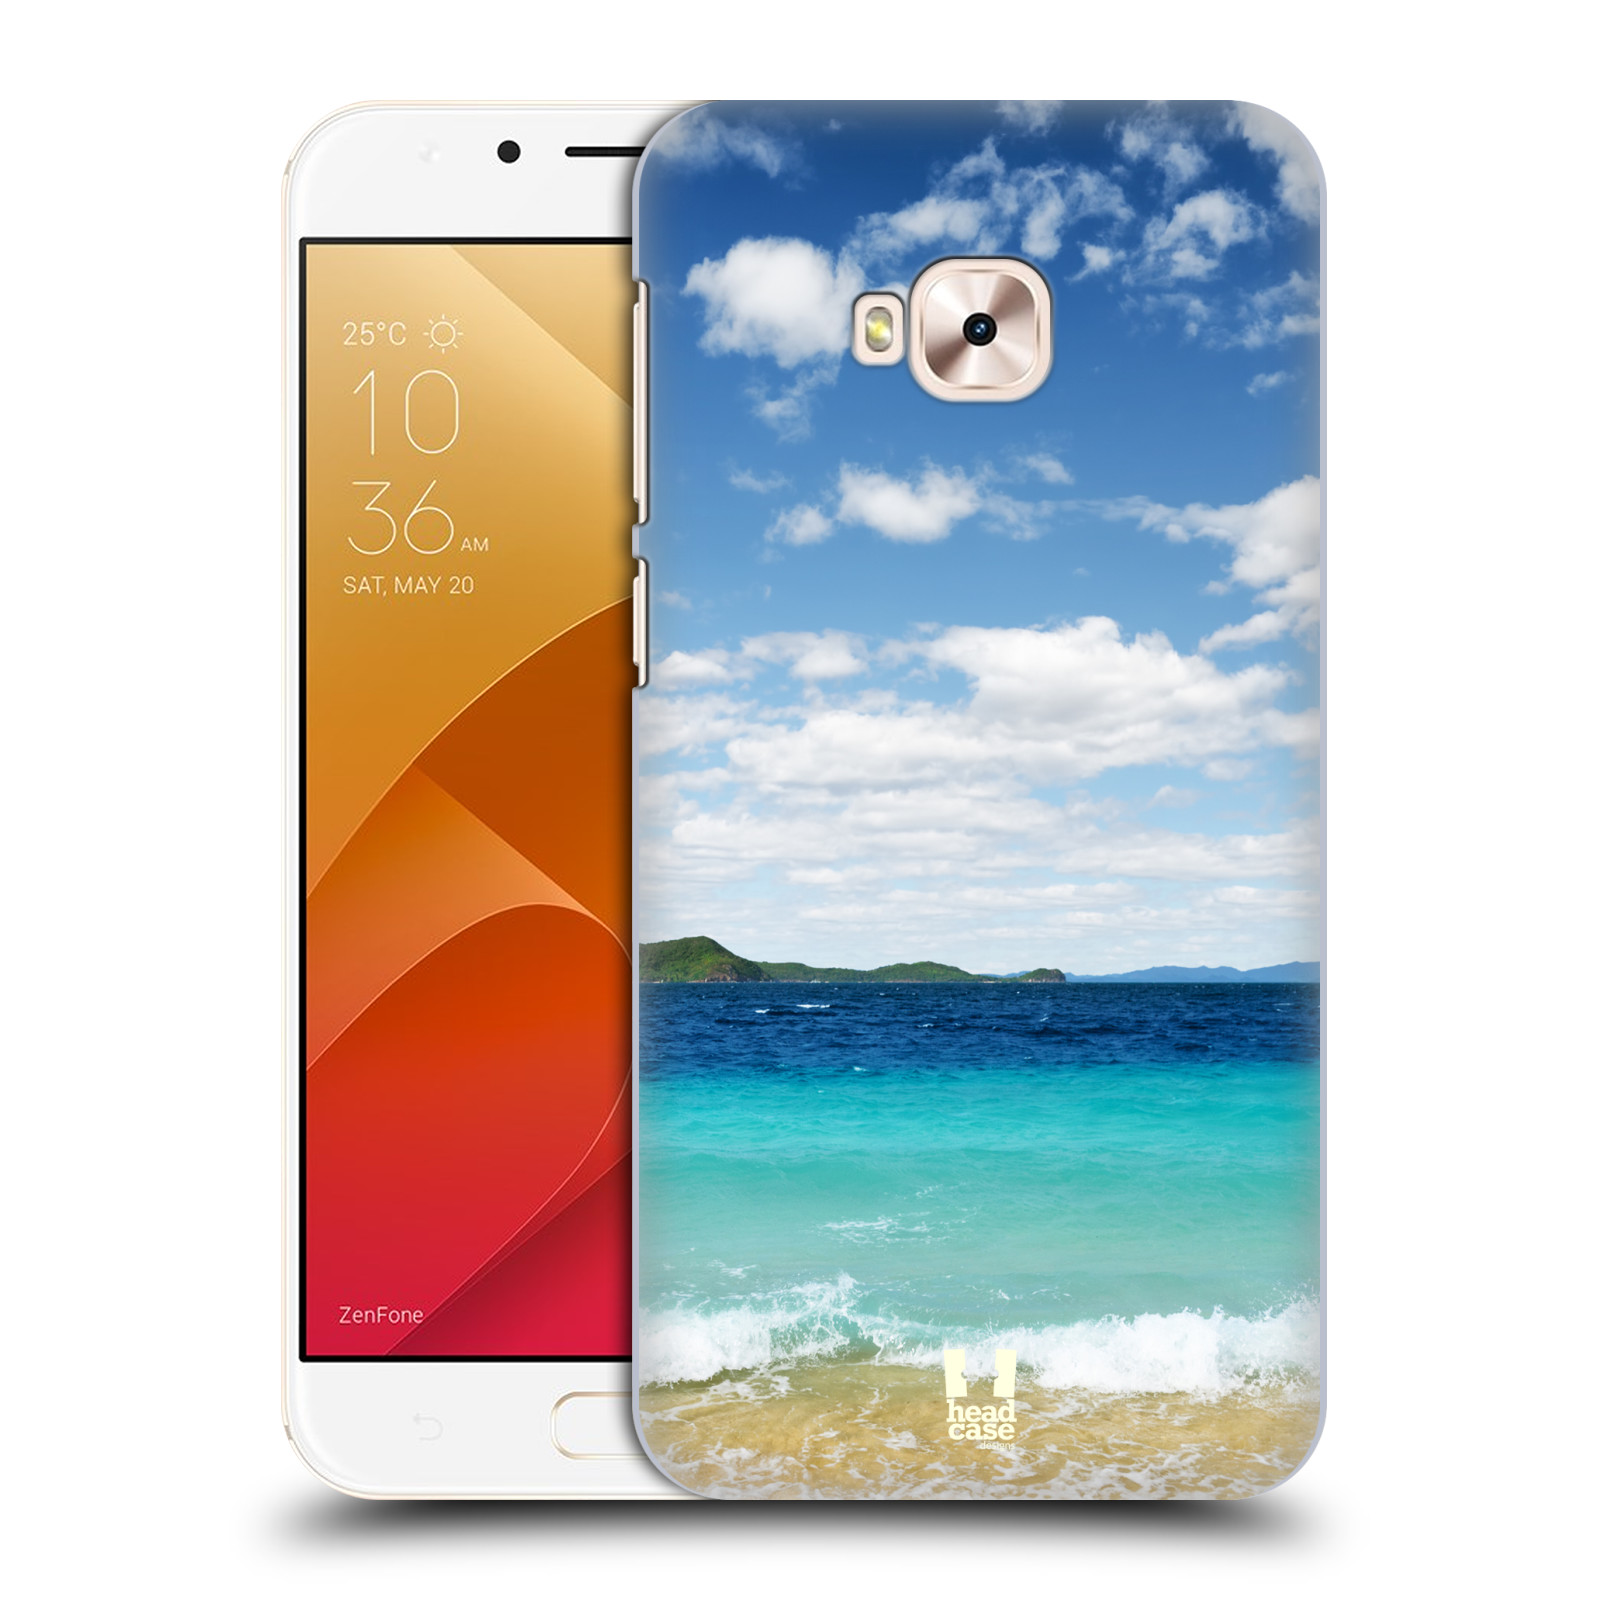 HEAD CASE plastový obal na mobil Asus Zenfone 4 Selfie Pro ZD552KL vzor Pláže a Moře VZDÁLENÝ OSTROV